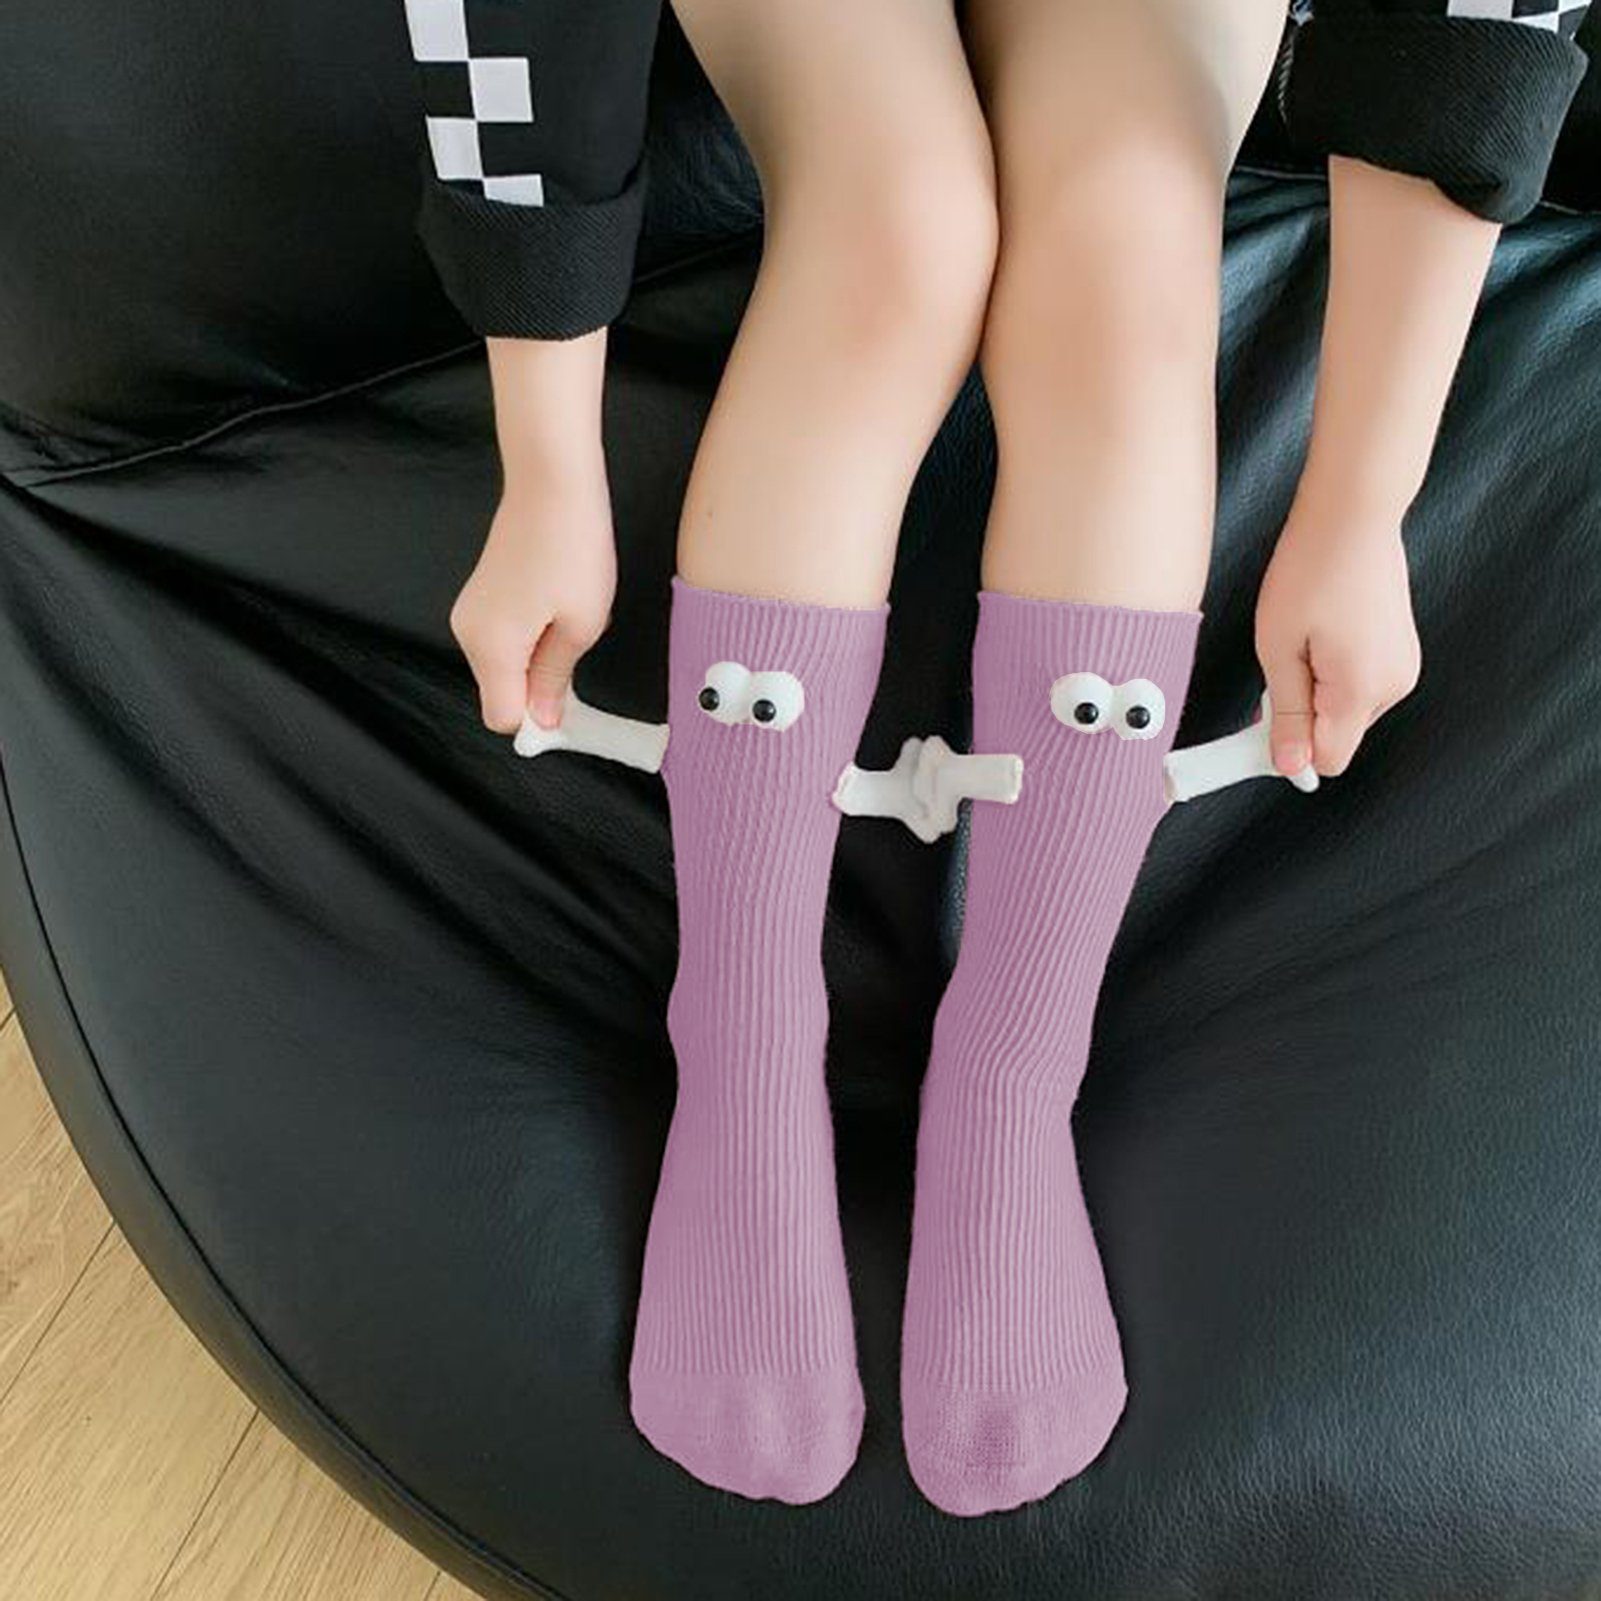 Rutaqian Feinsocken 2 Paar Socken Mit Magneten, Socken Die Händchen Halten (Magnetische Saug-3D-Puppenaugen-Socke für Unisex, Lustige Paar-Händchenhalten-Socken, und Trend-Persönlichkeit) Lila